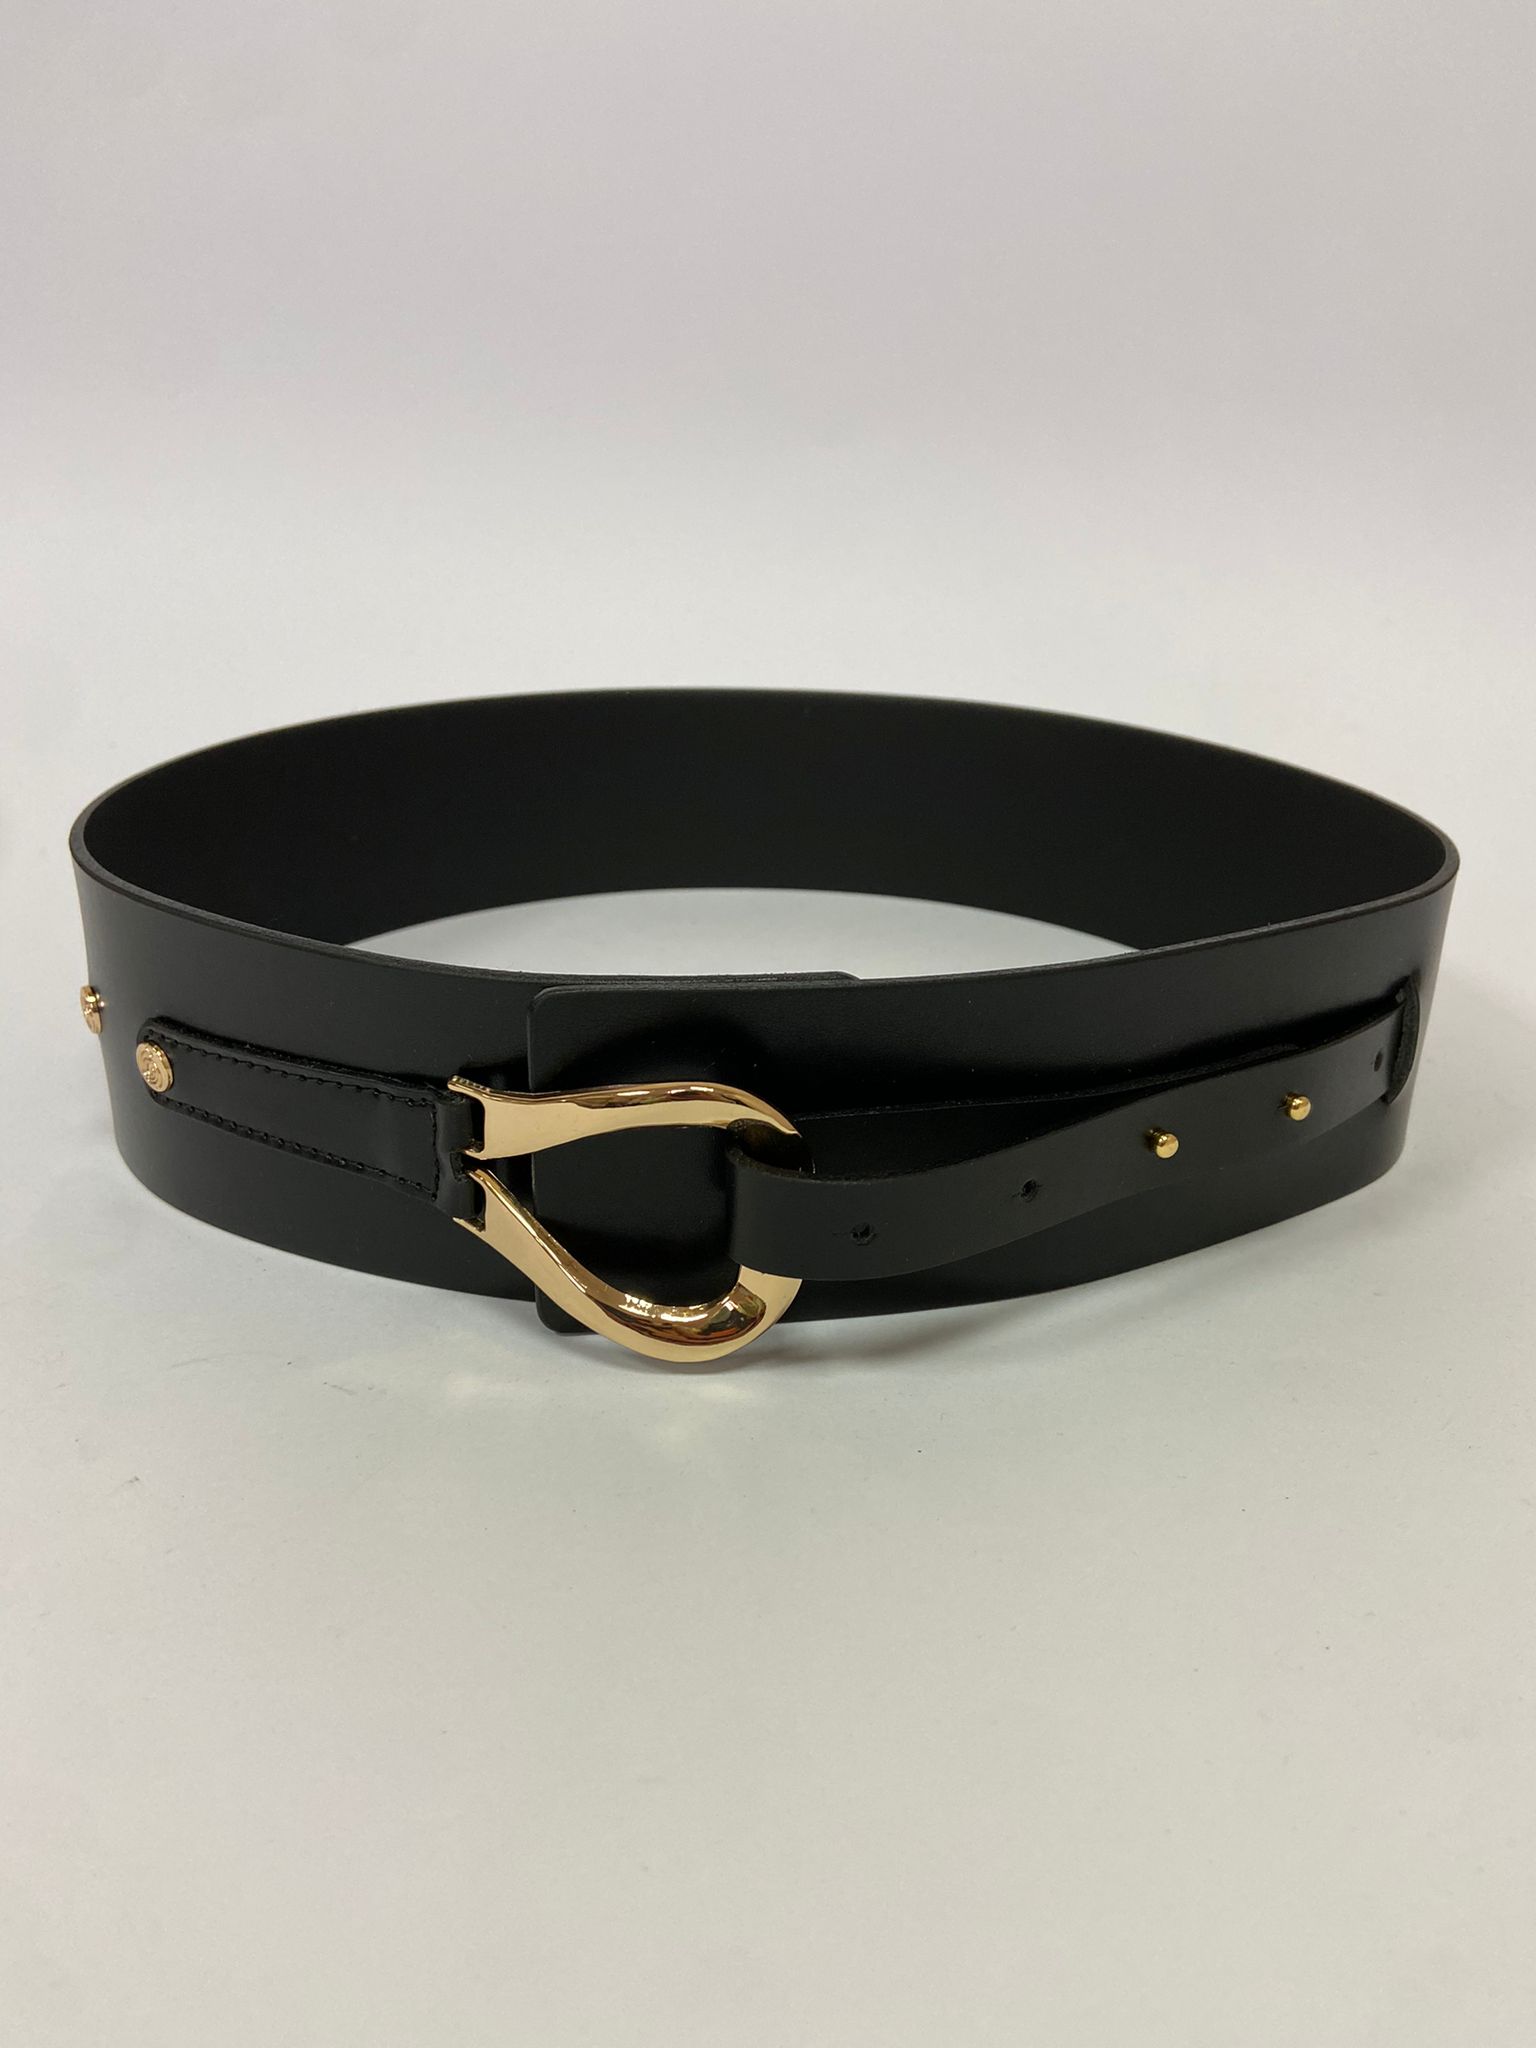 Leather belt - LuAna image 1